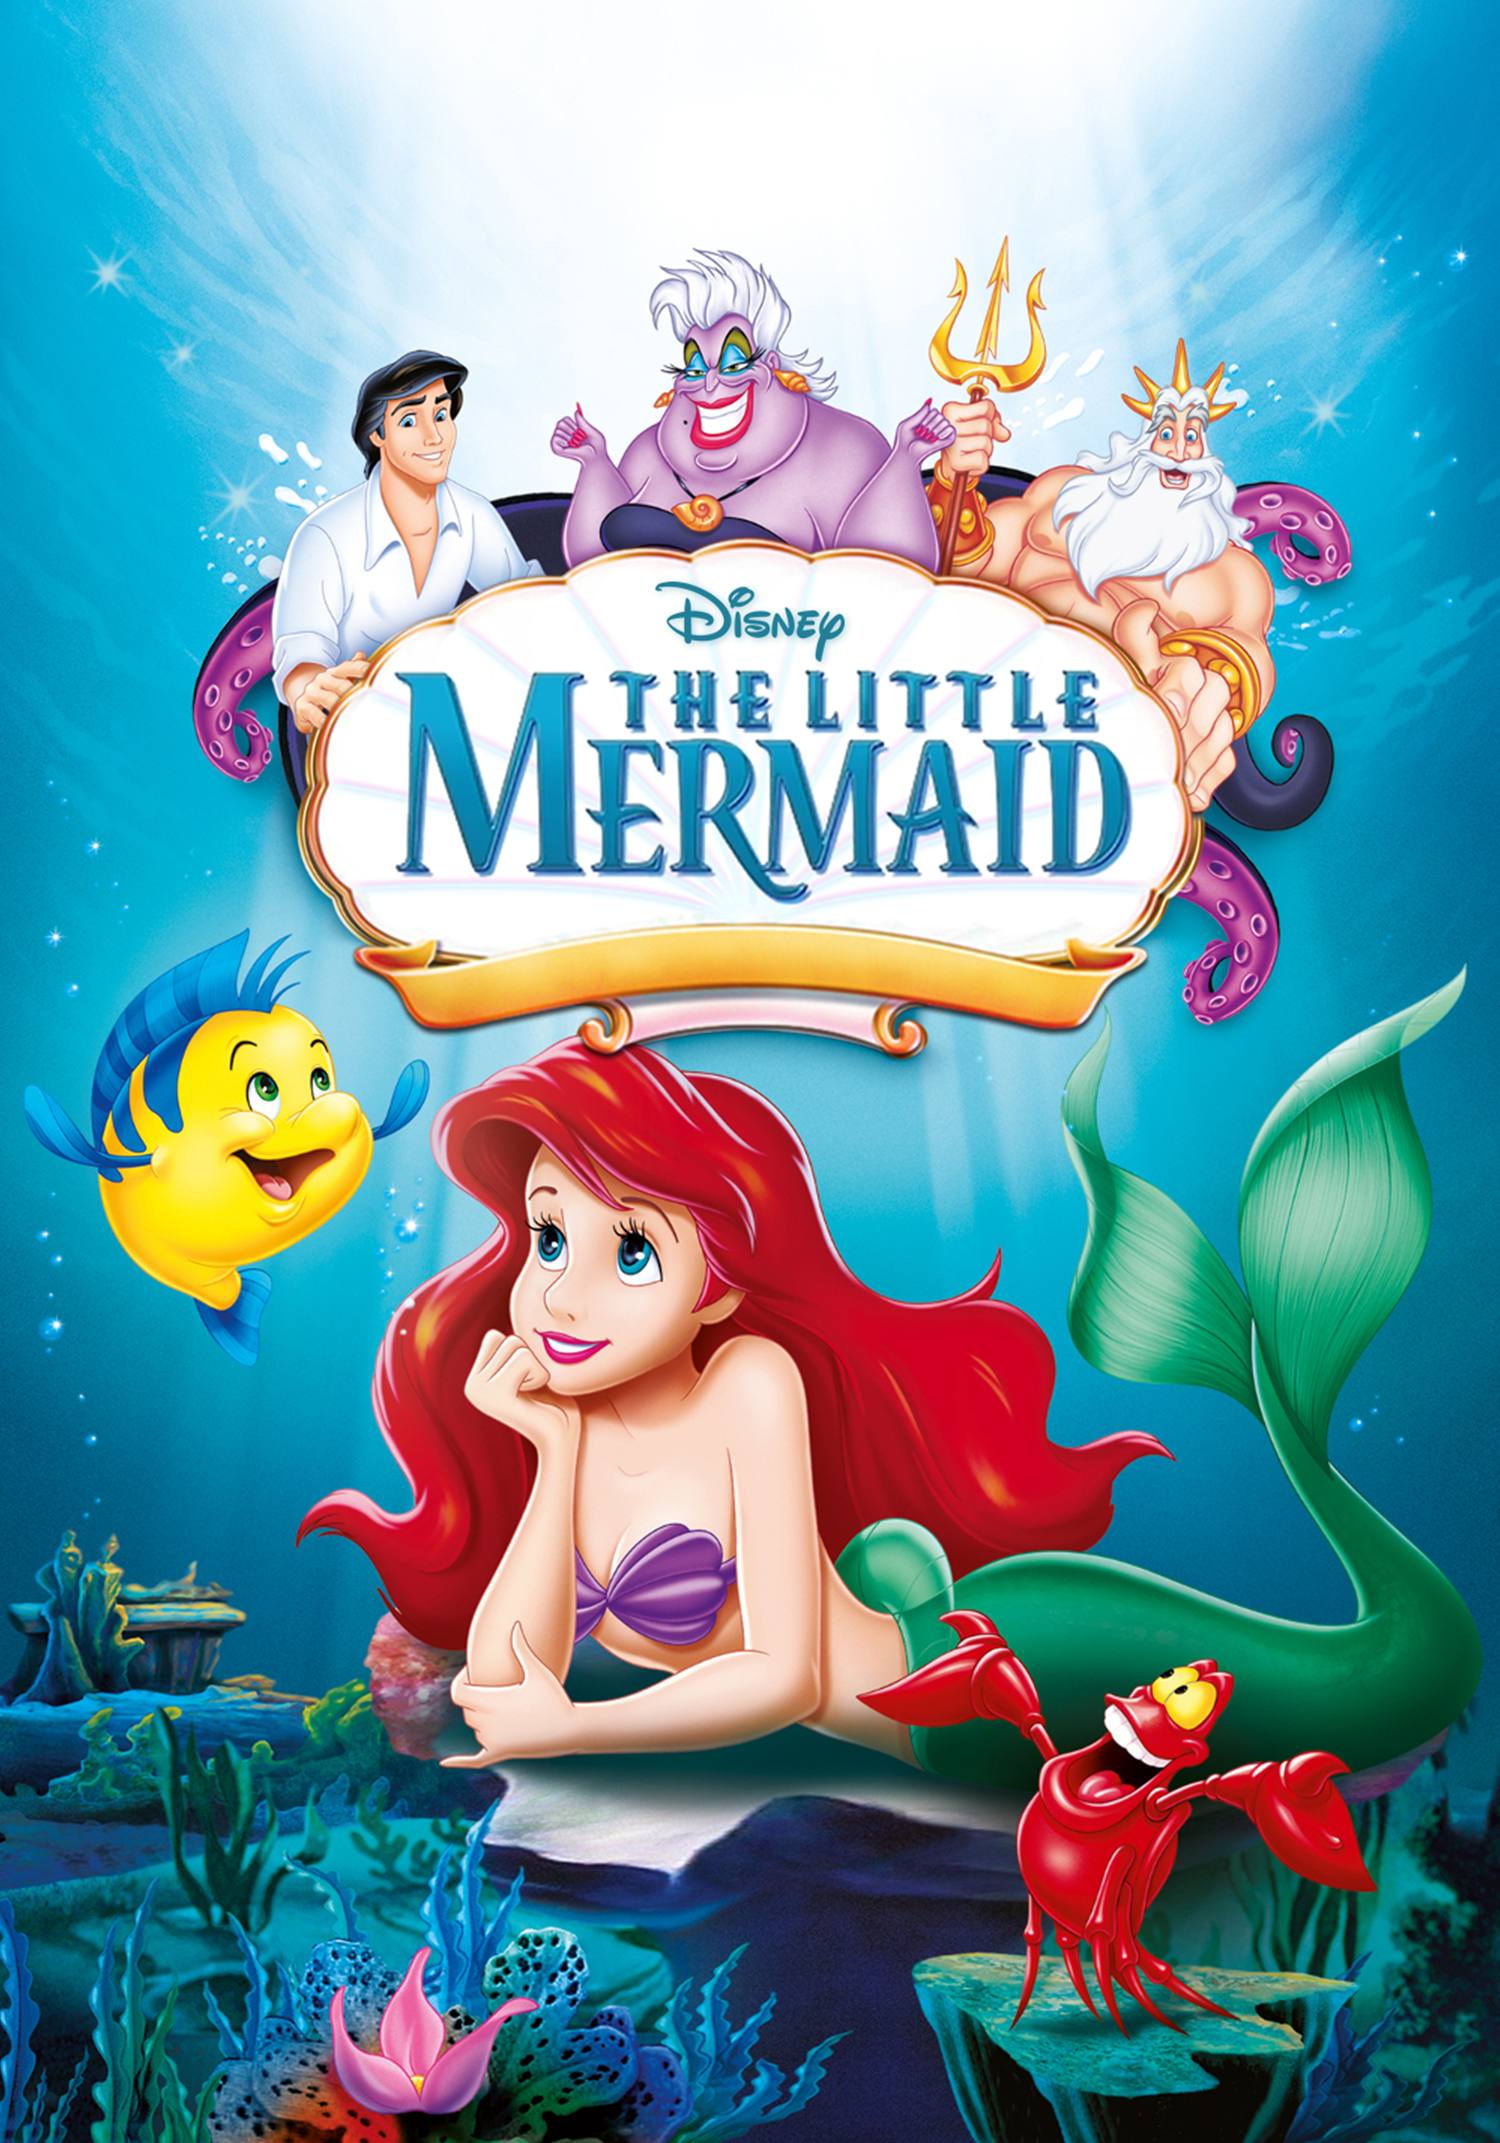 The Little Mermaid | Disney Wikmrd Wiki | Fandom